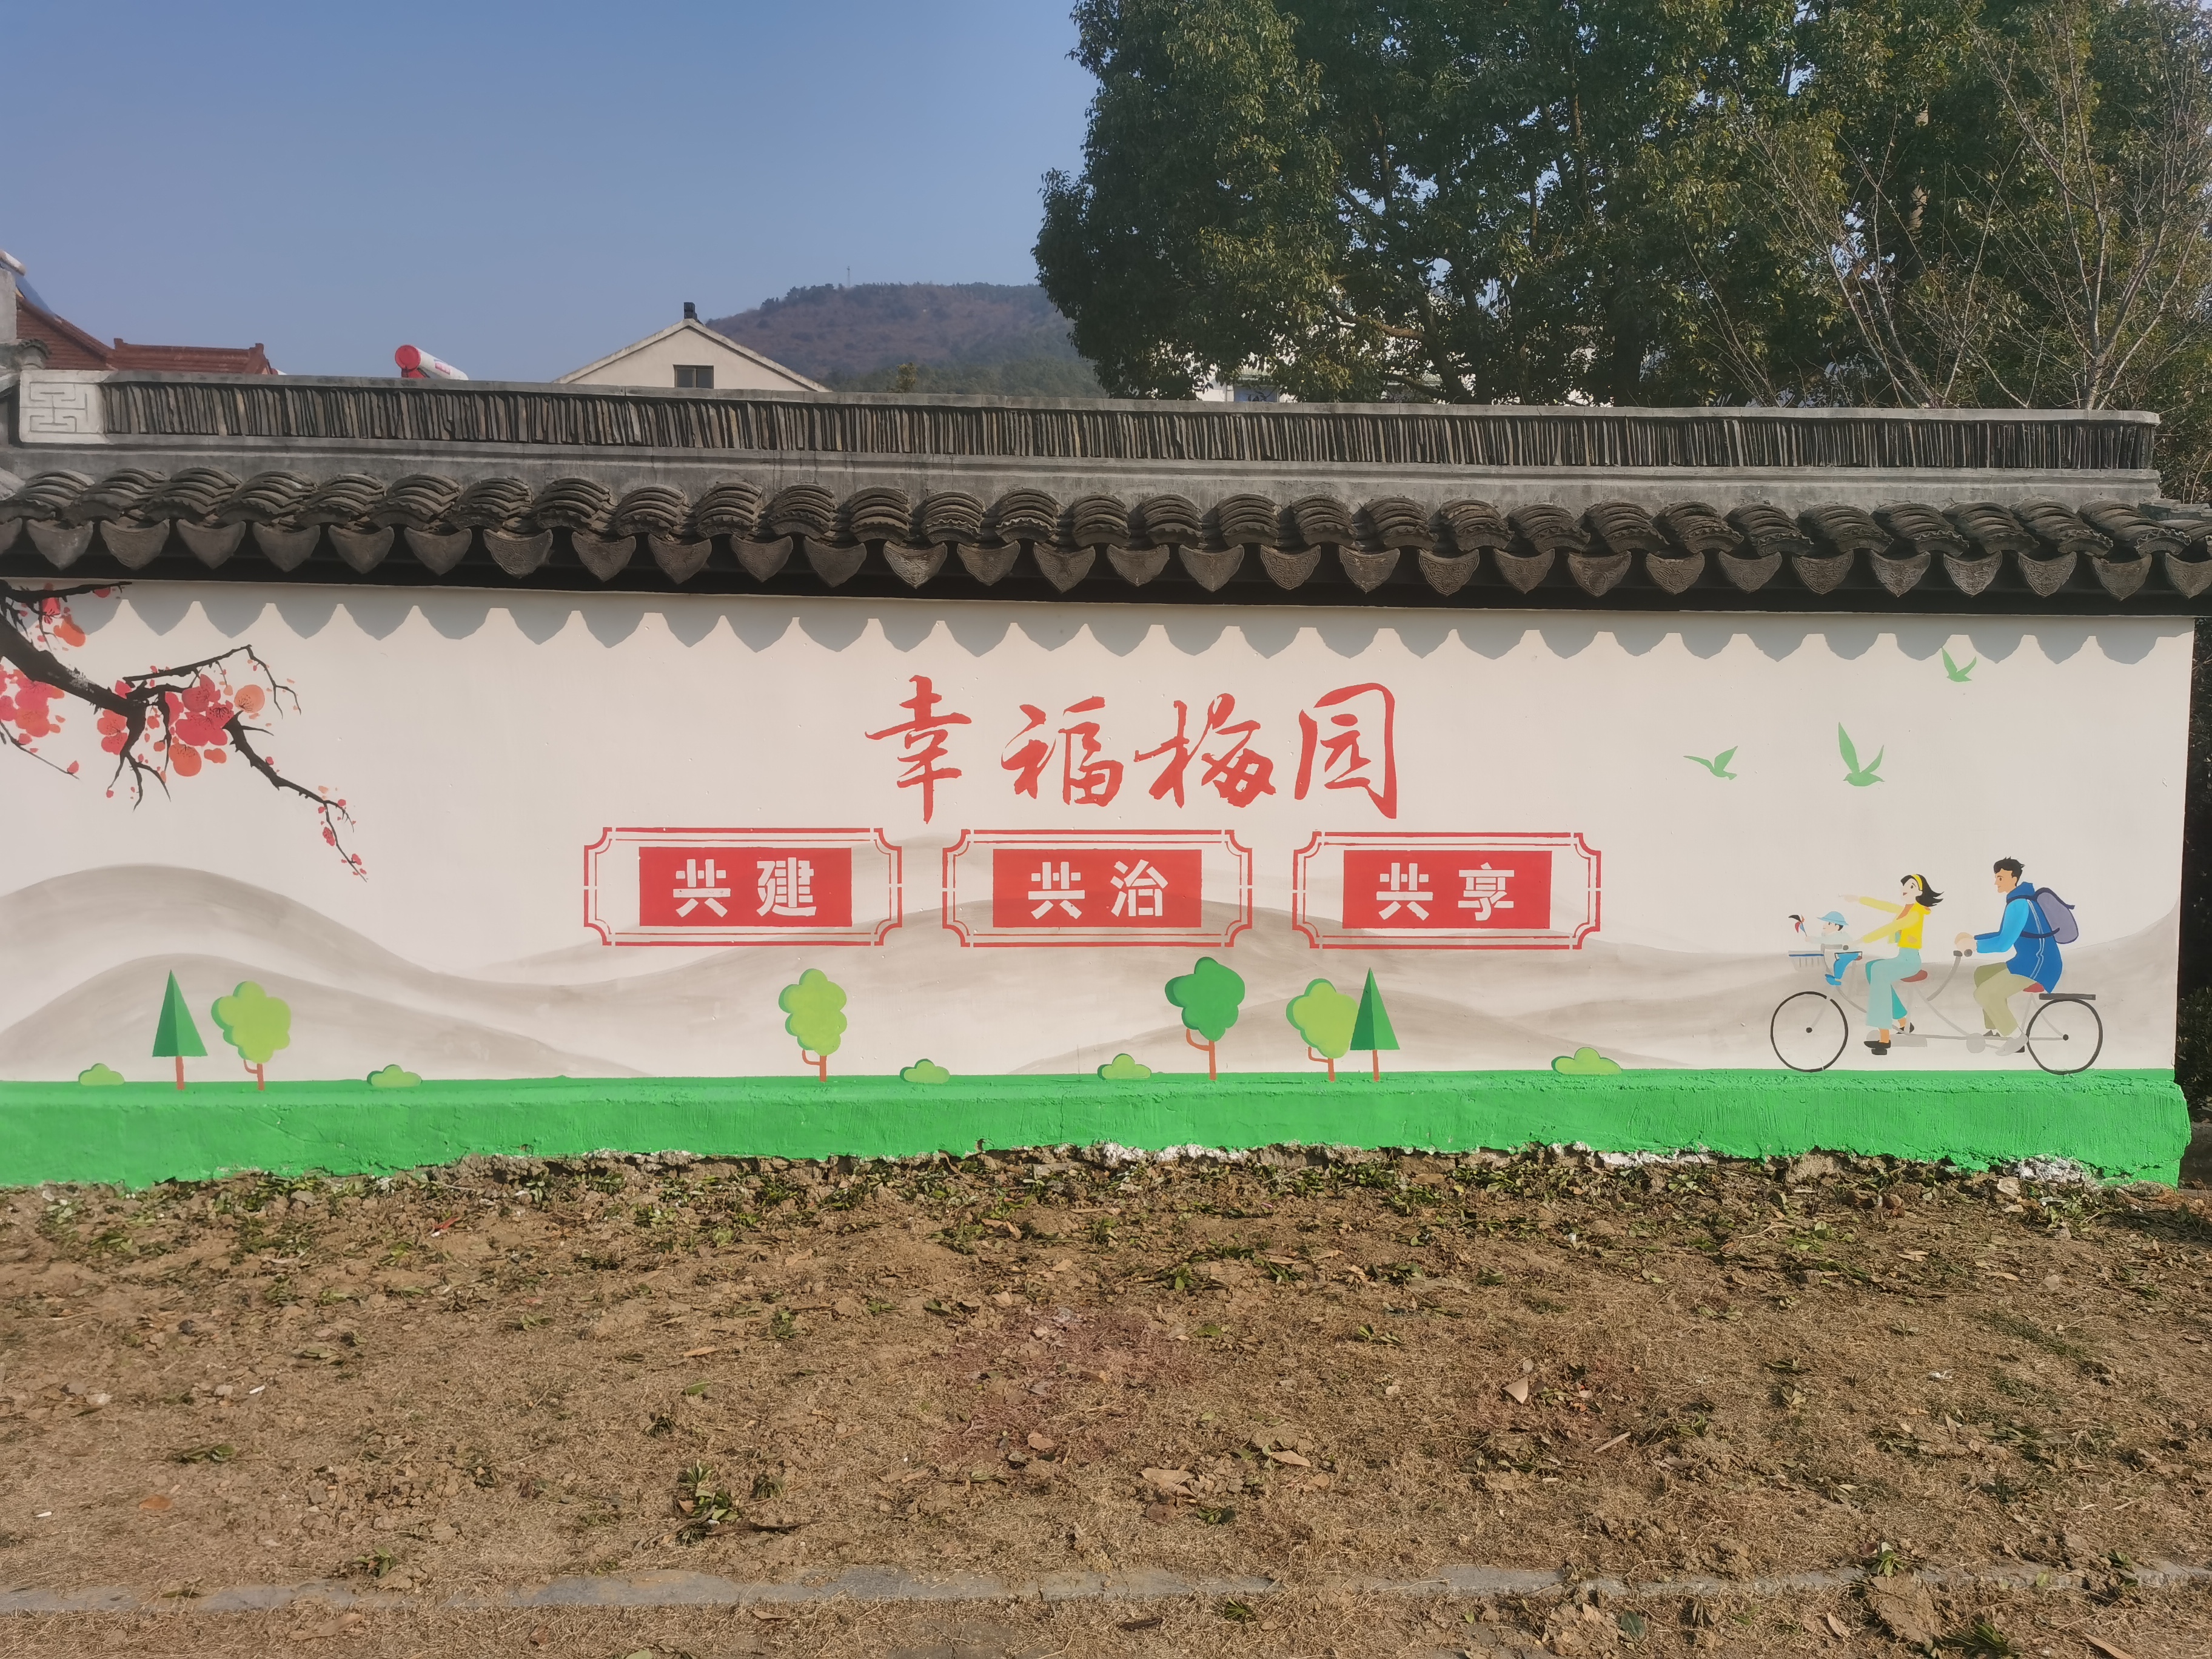 "梅园村"文化墙彩绘,弘扬社会主义价值观